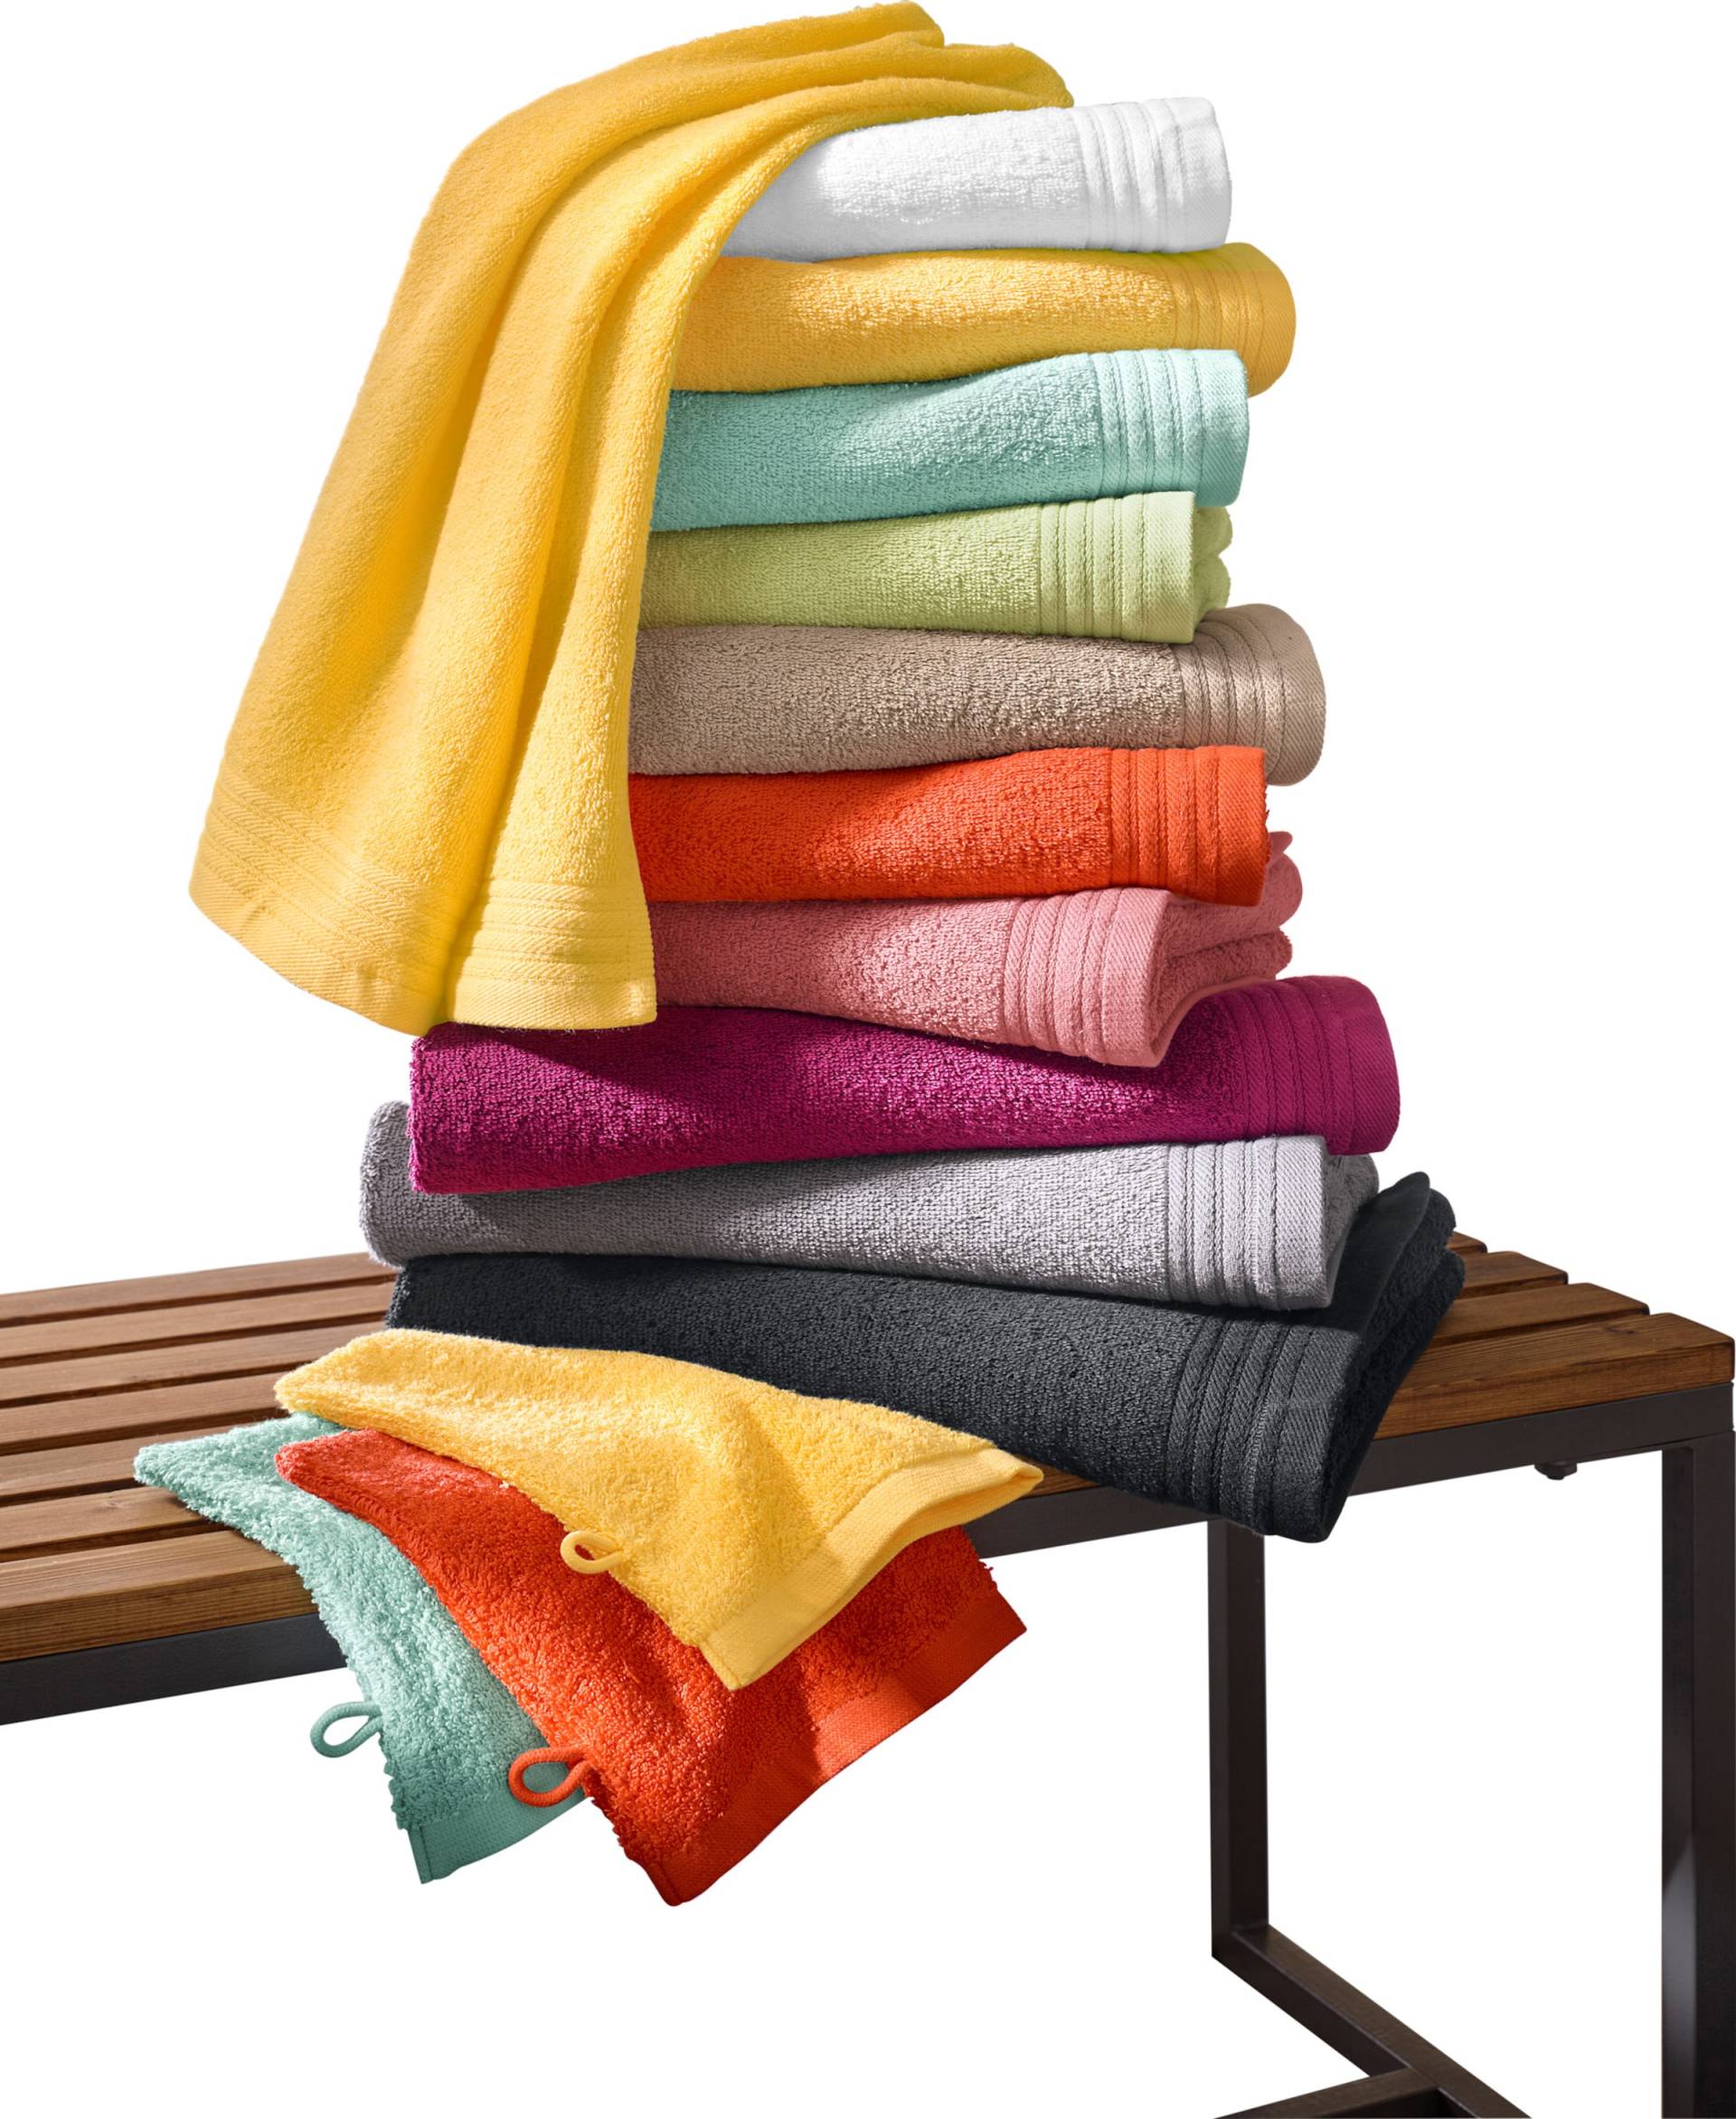 Sieh an! unisex Handtuch gelb von wäschepur